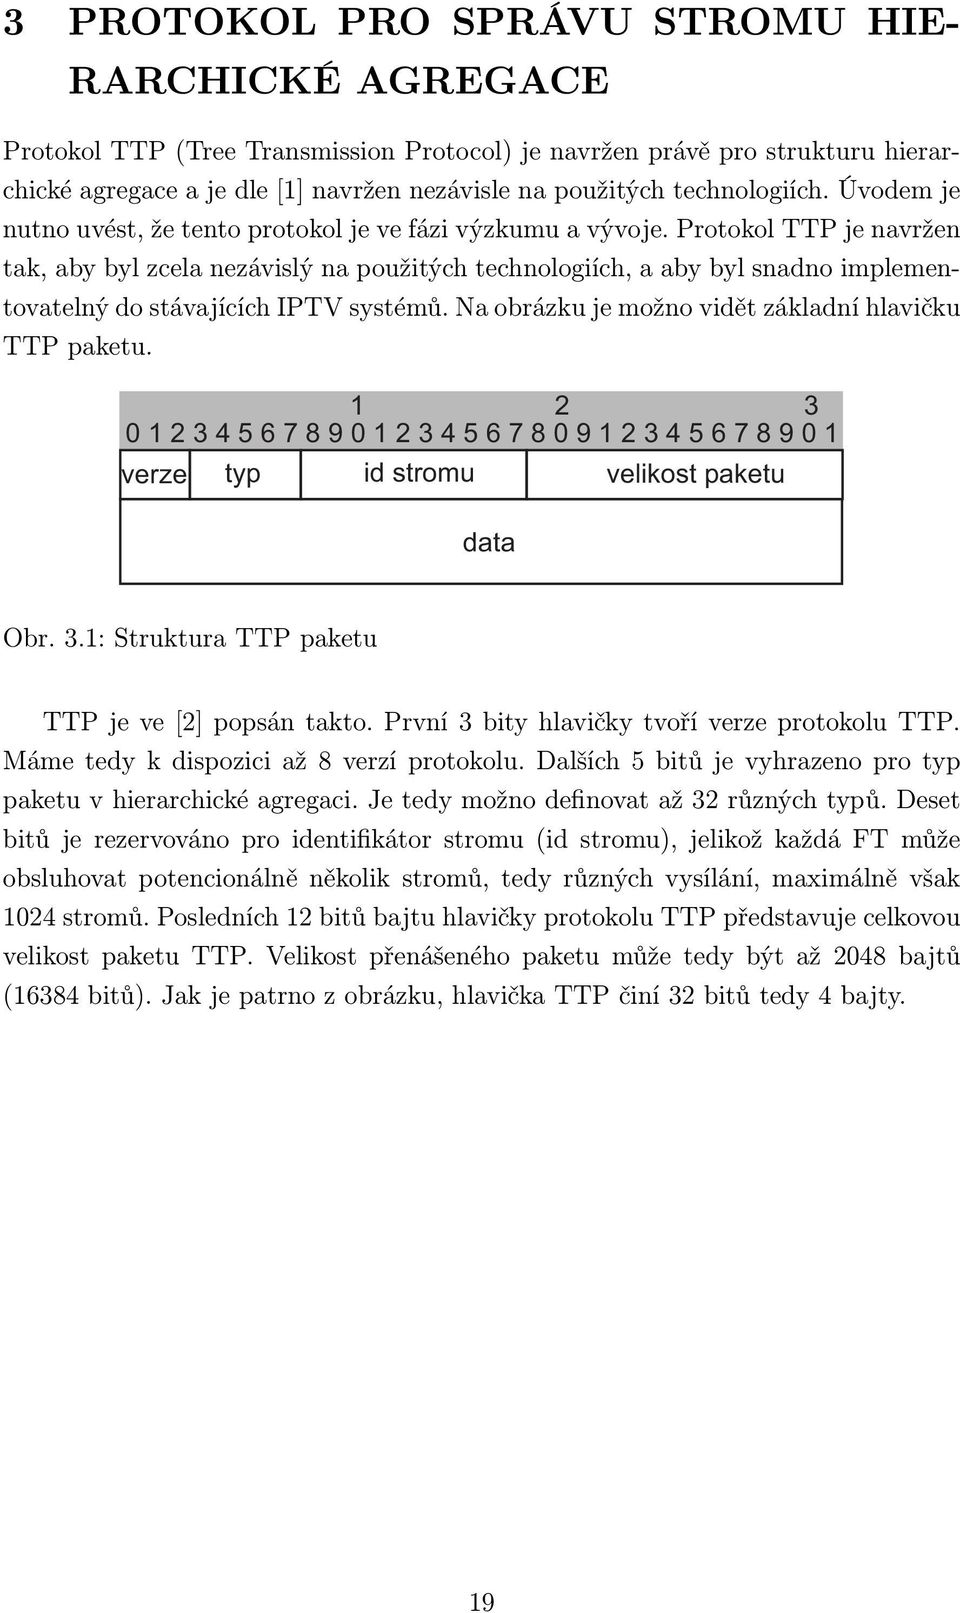 Protokol TTP je navržen tak, aby byl zcela nezávislý na použitých technologiích, a aby byl snadno implementovatelný do stávajících IPTV systémů. Na obrázku je možno vidět základní hlavičku TTP paketu.